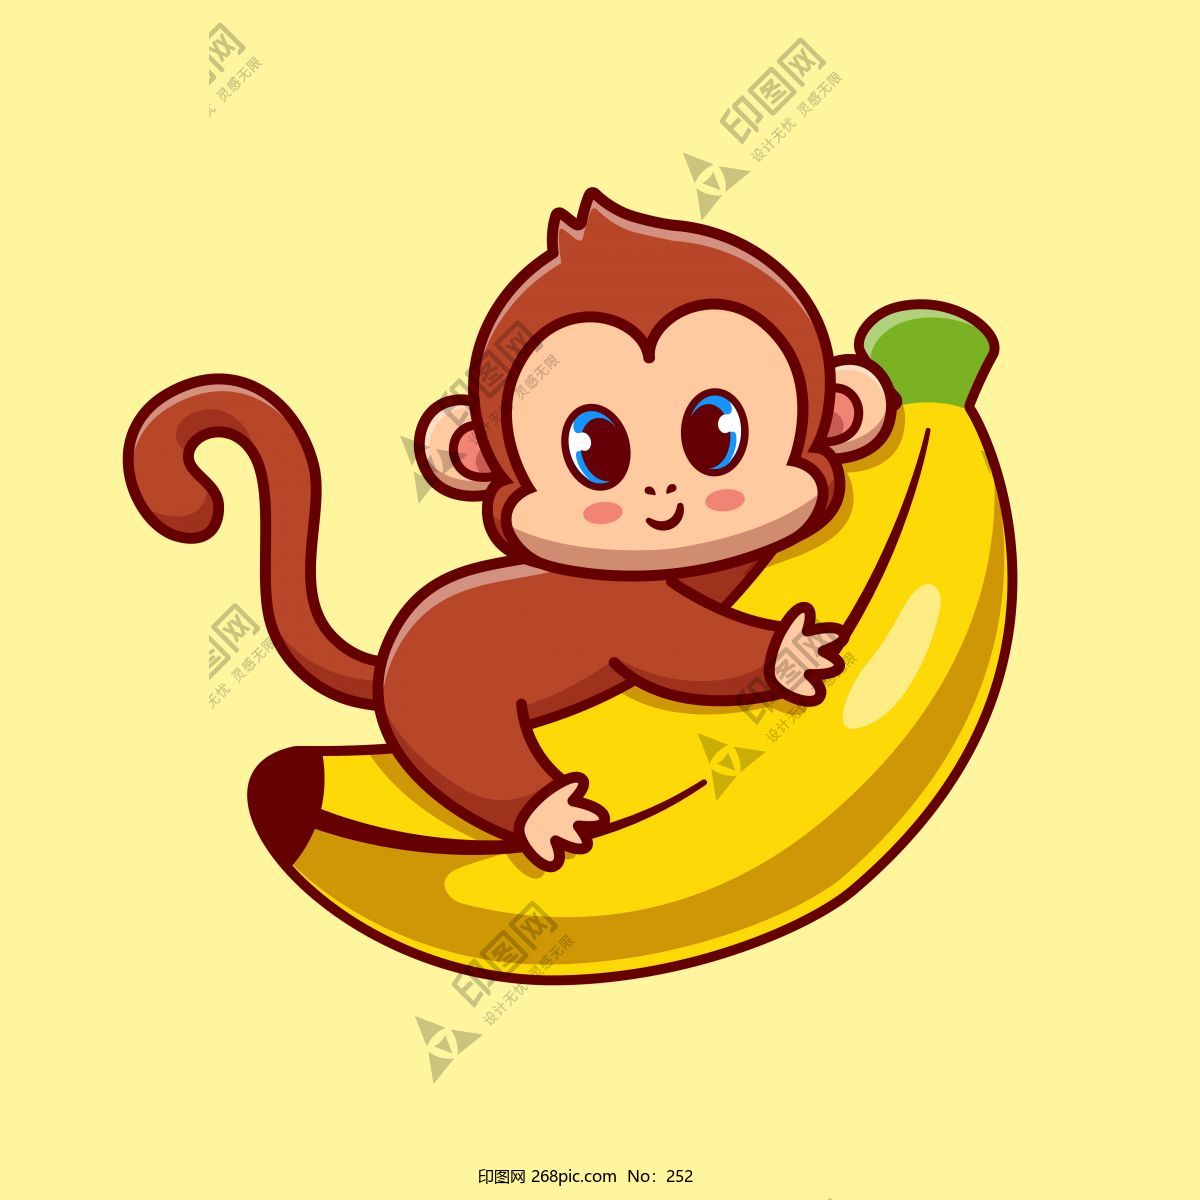 猴子骑香蕉